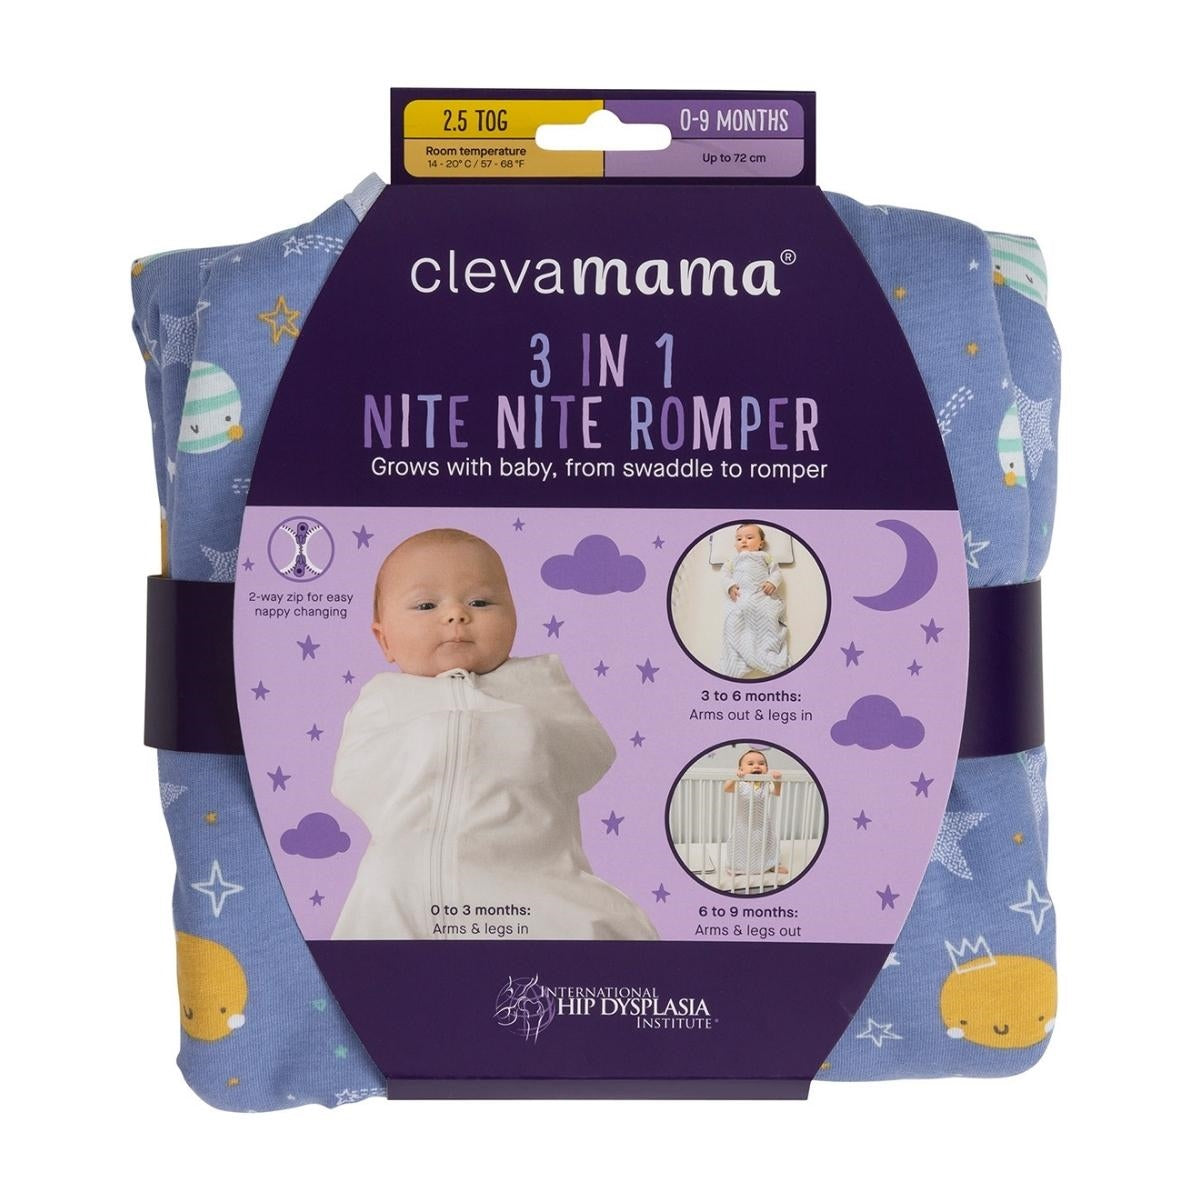 Clevamama 3 in 1 Nite Nite Romper & Sleeping Bag (2.5 Tog) Blue